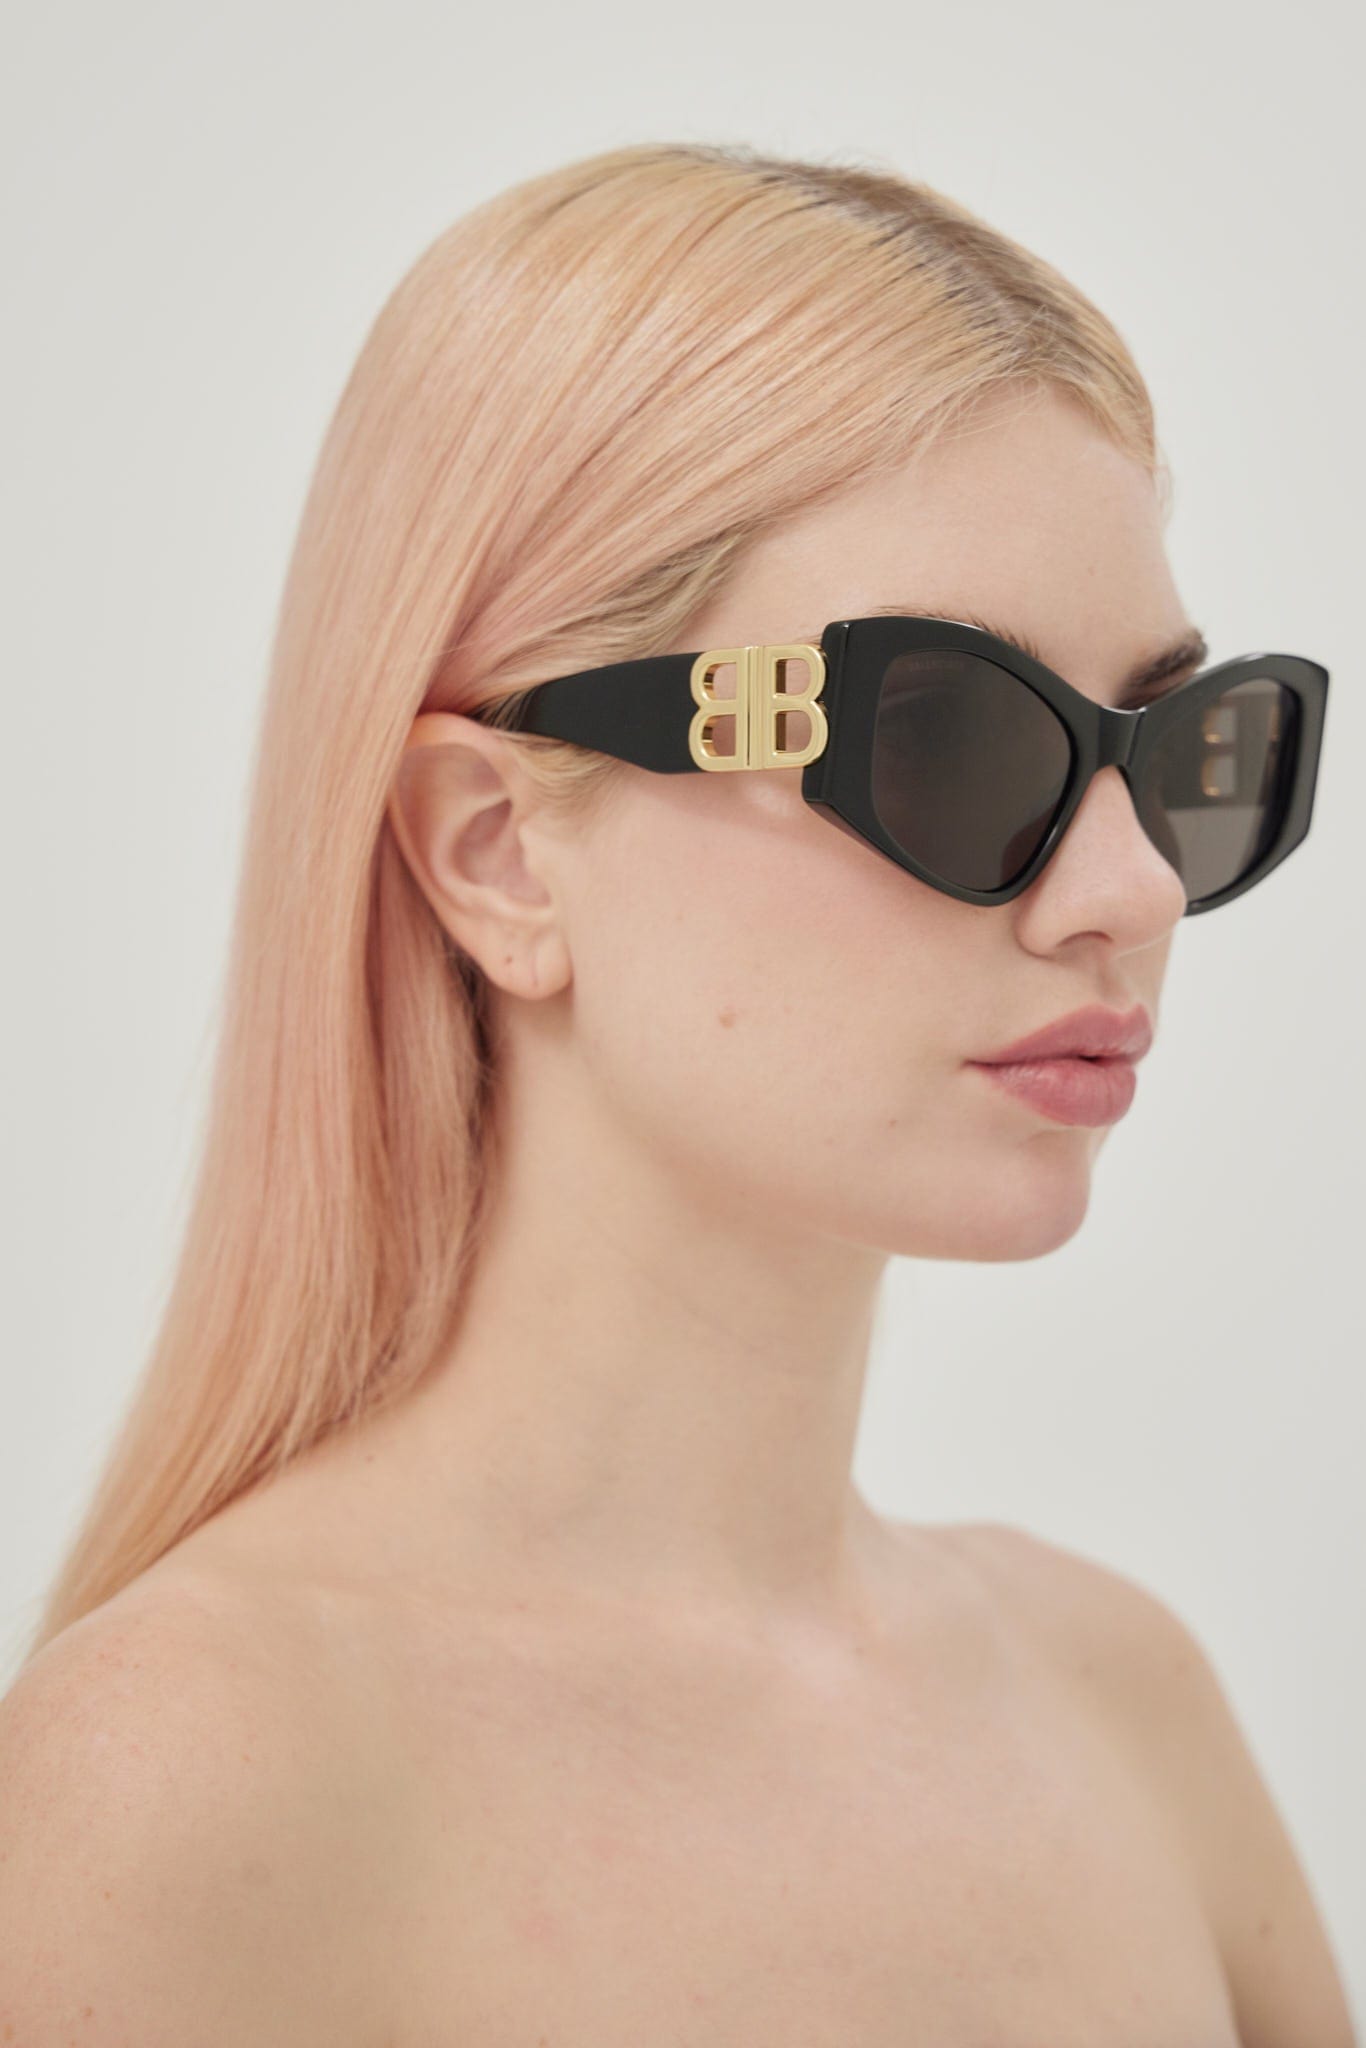 Balenciaga Dynasty over black sunglasses featuring BB gold logo - Eyewear Club